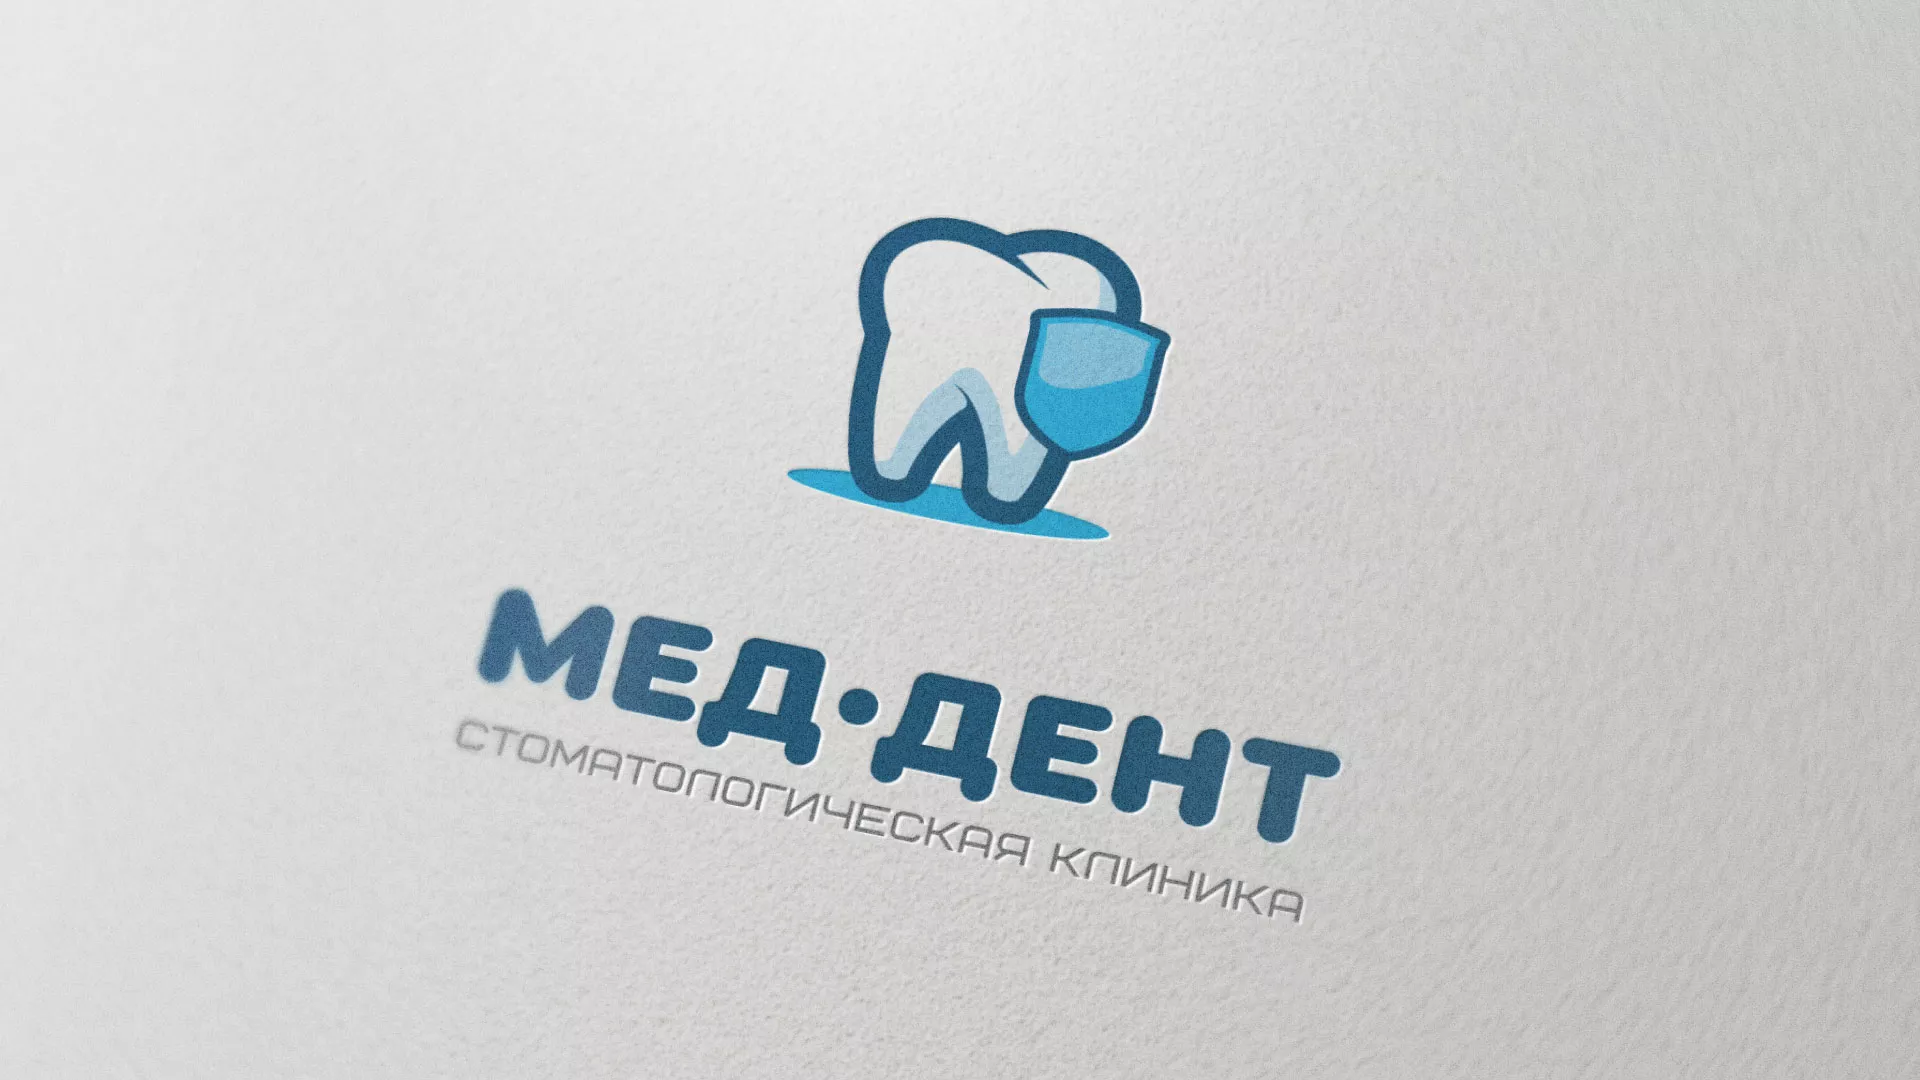 Разработка логотипа стоматологической клиники «МЕД-ДЕНТ» в Славянске-на-Кубани